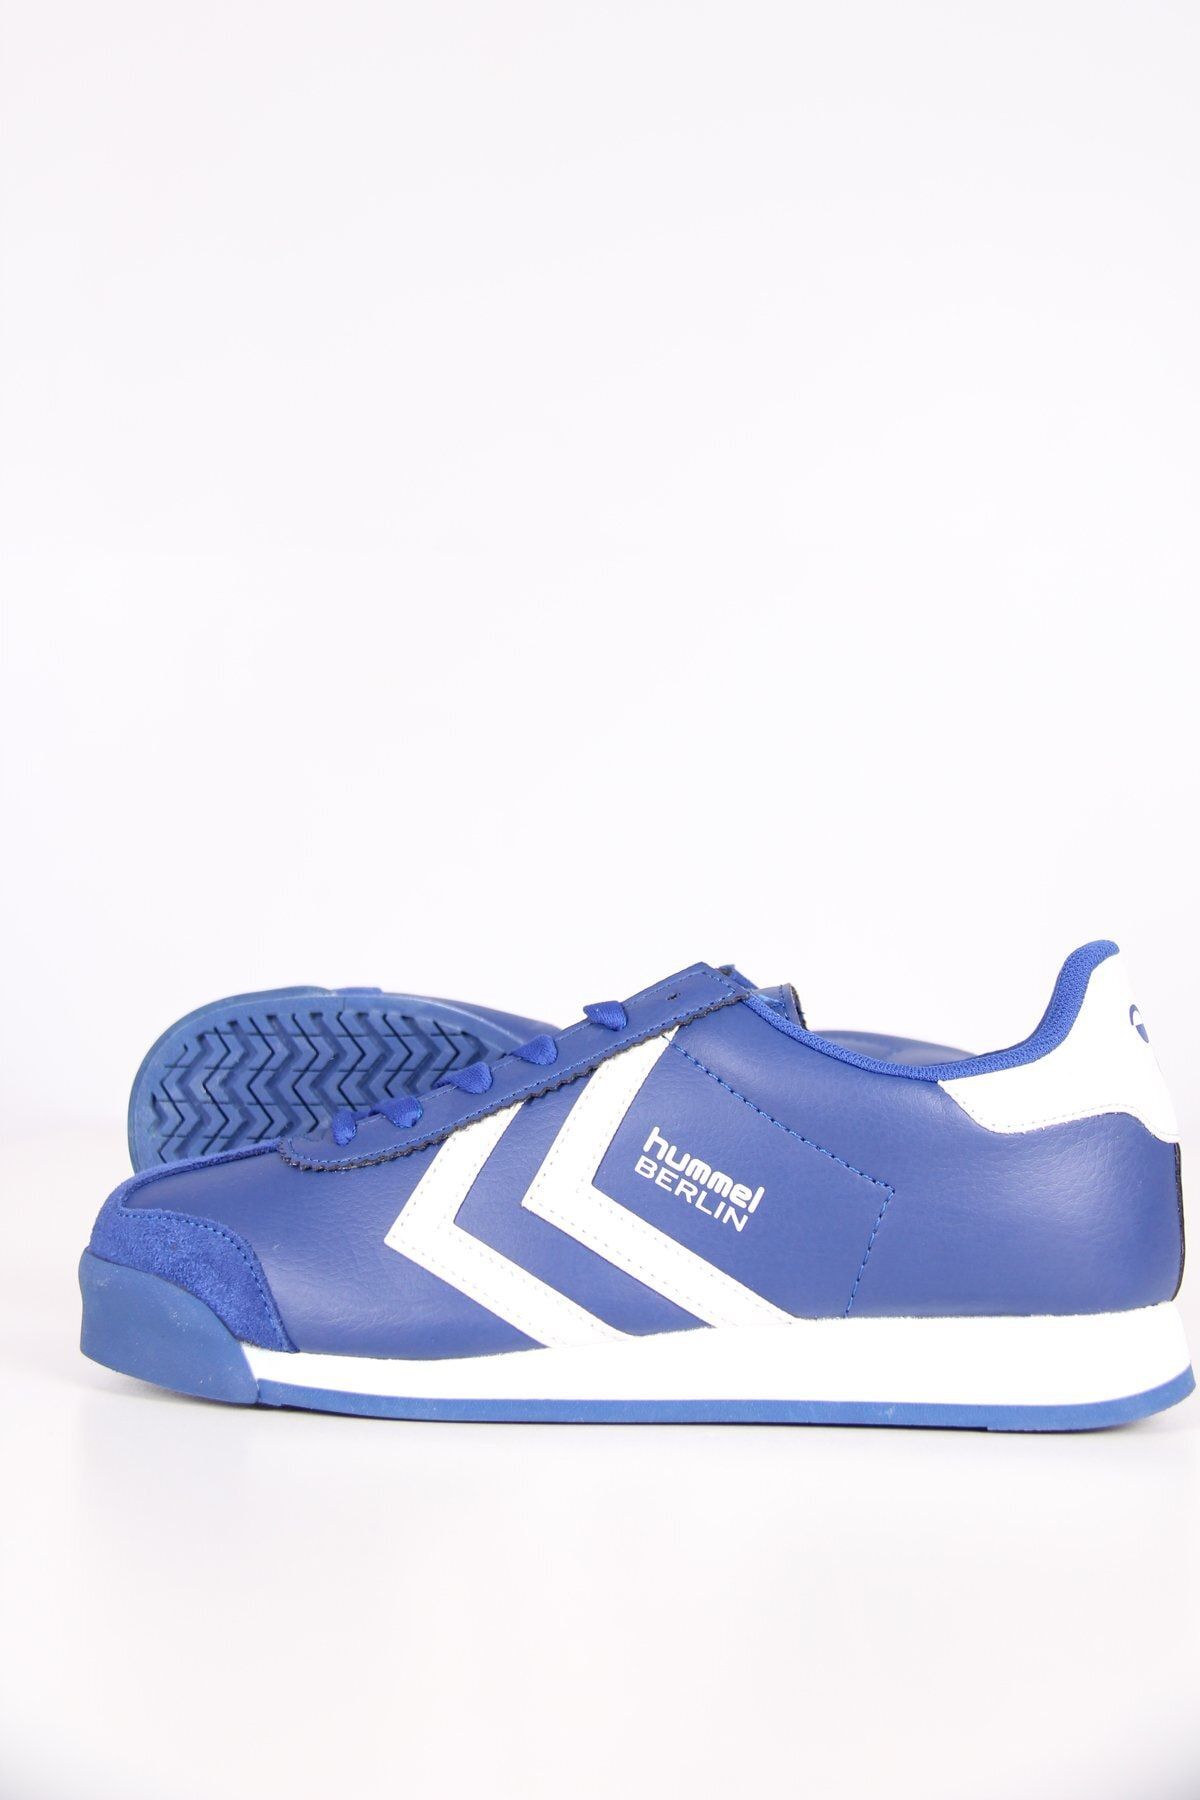 hummel Unisex Berlin Mavi Spor Ayakkabı 204210-7459